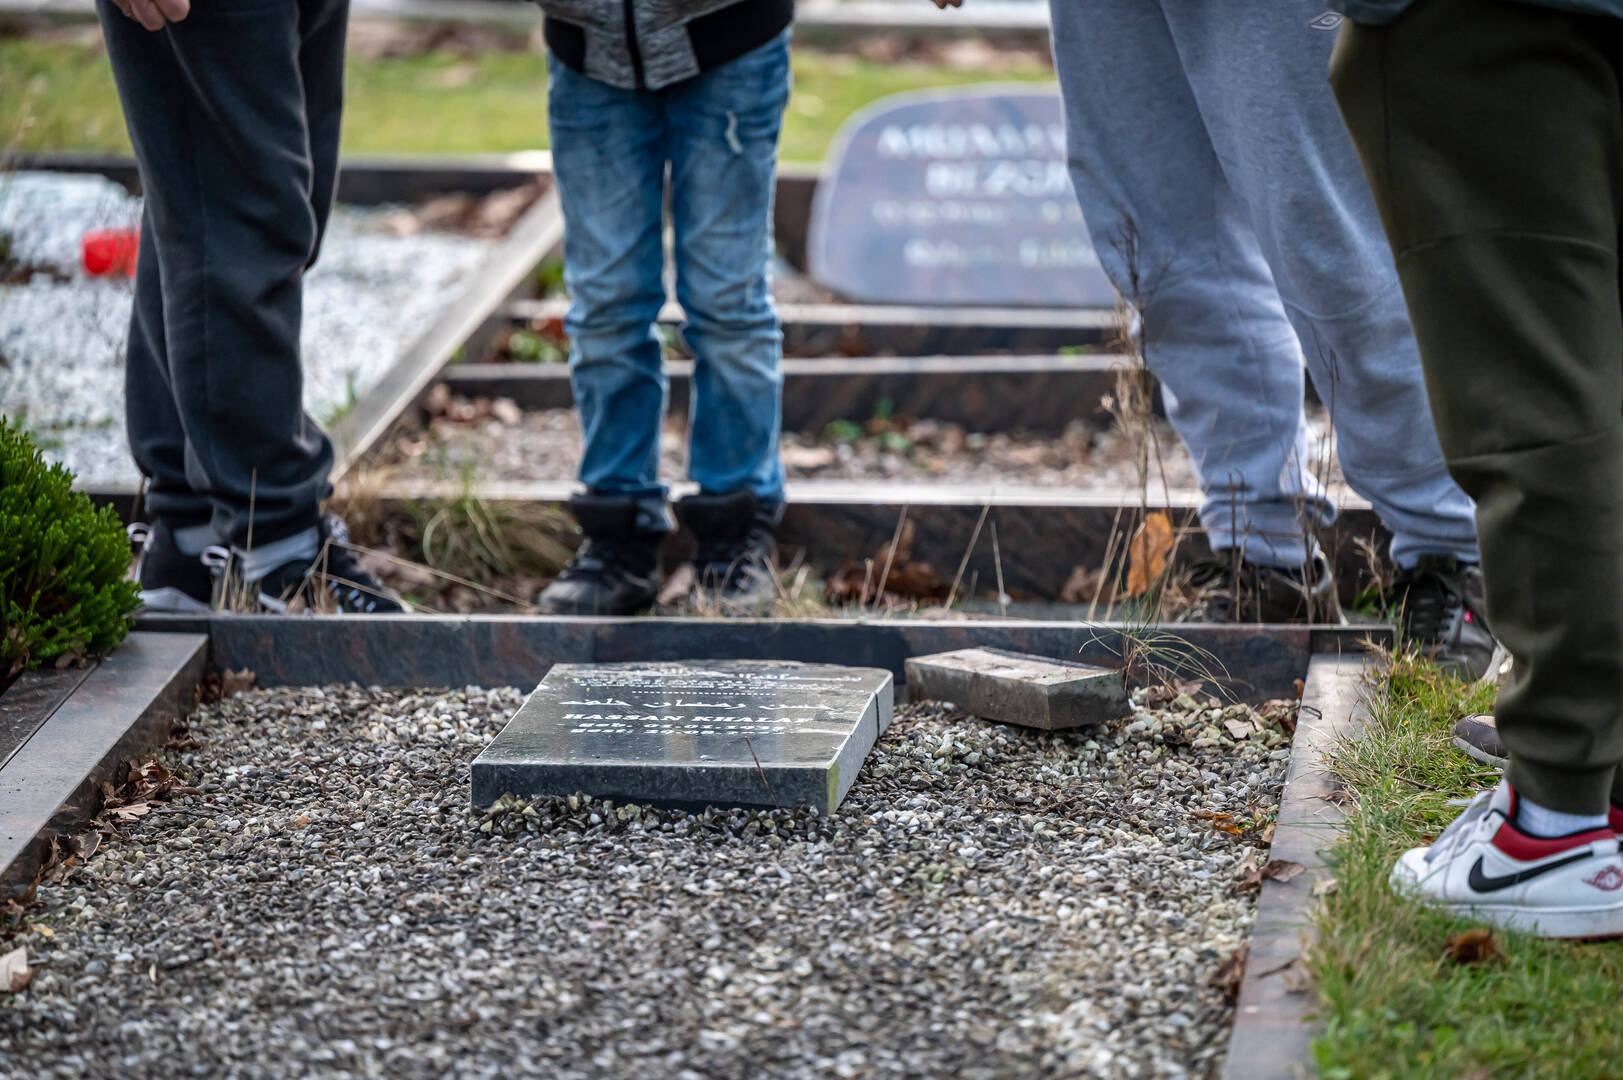 العثور على 93 قبرا في موقع مدرسة سابقة في كندا